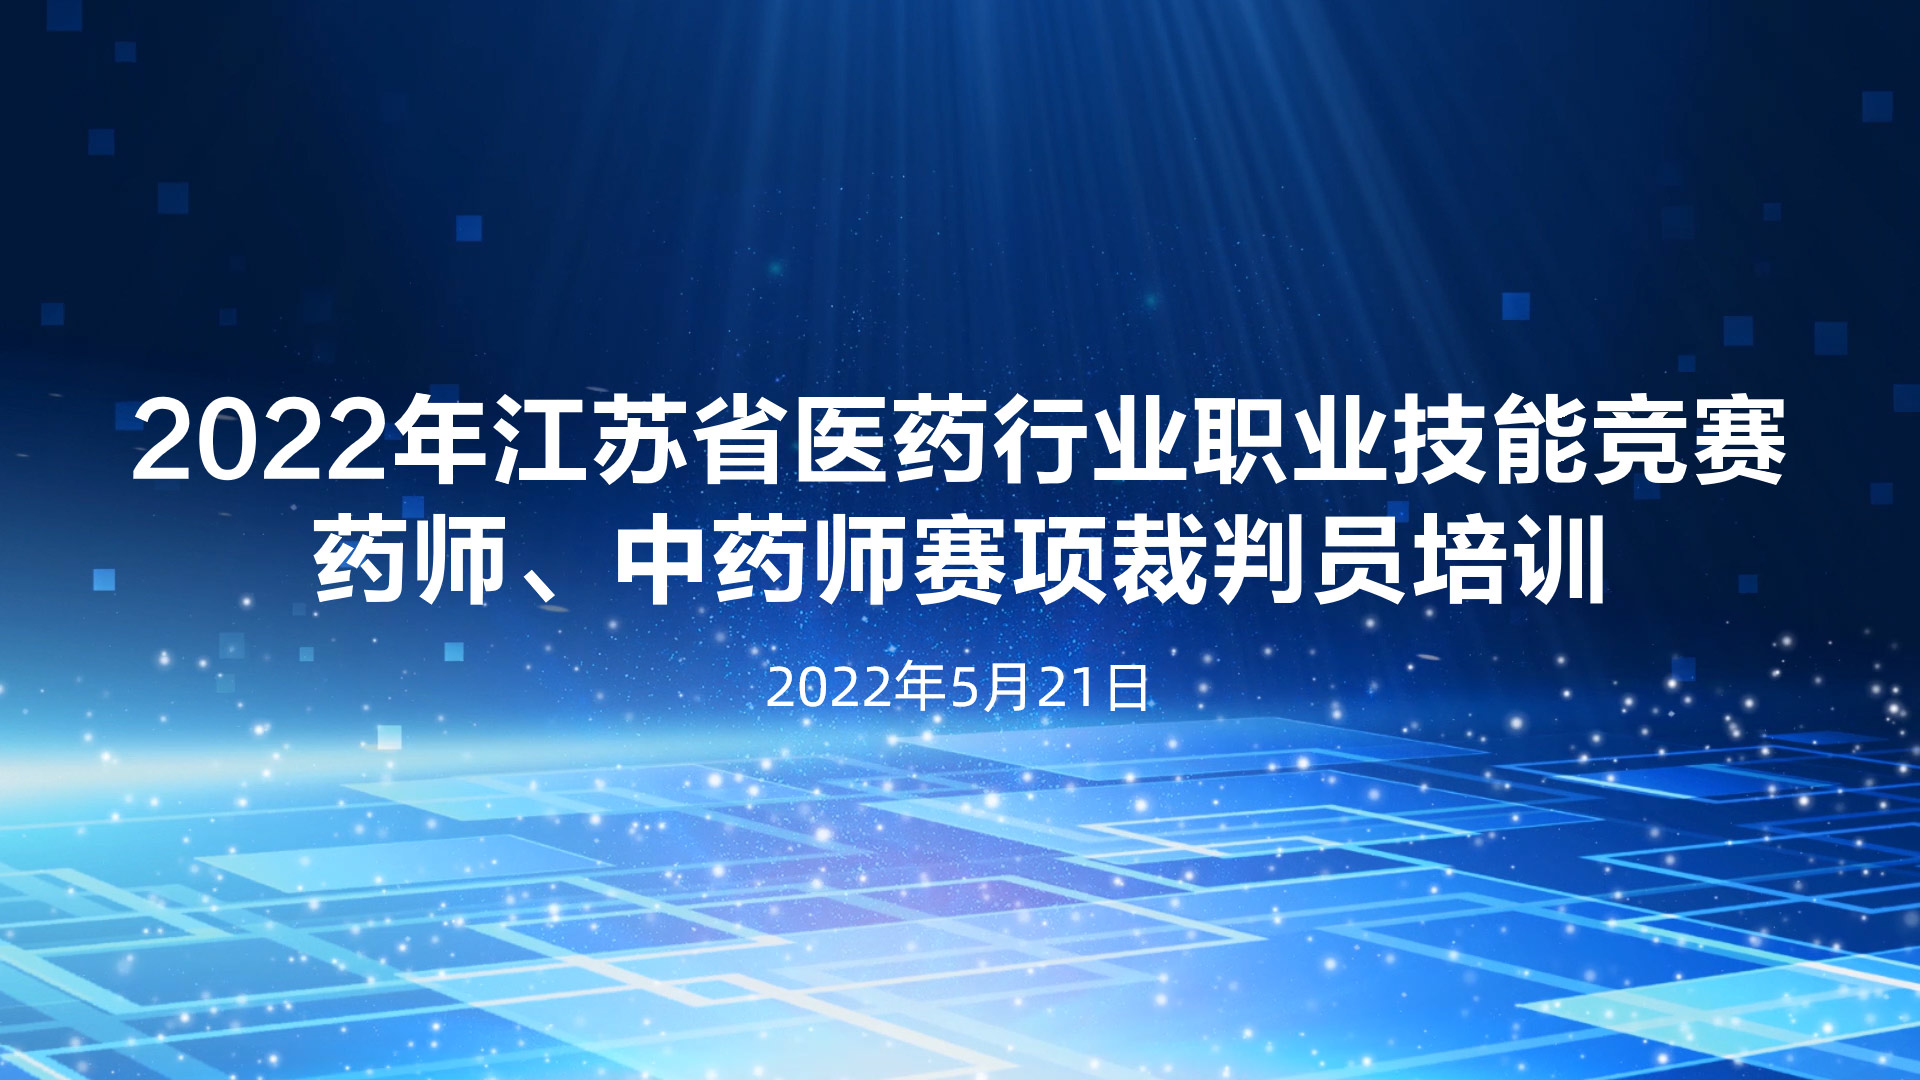 2022年江苏省医药行业职业技能竞赛药师、中药师赛项裁判员线上培训顺利举行